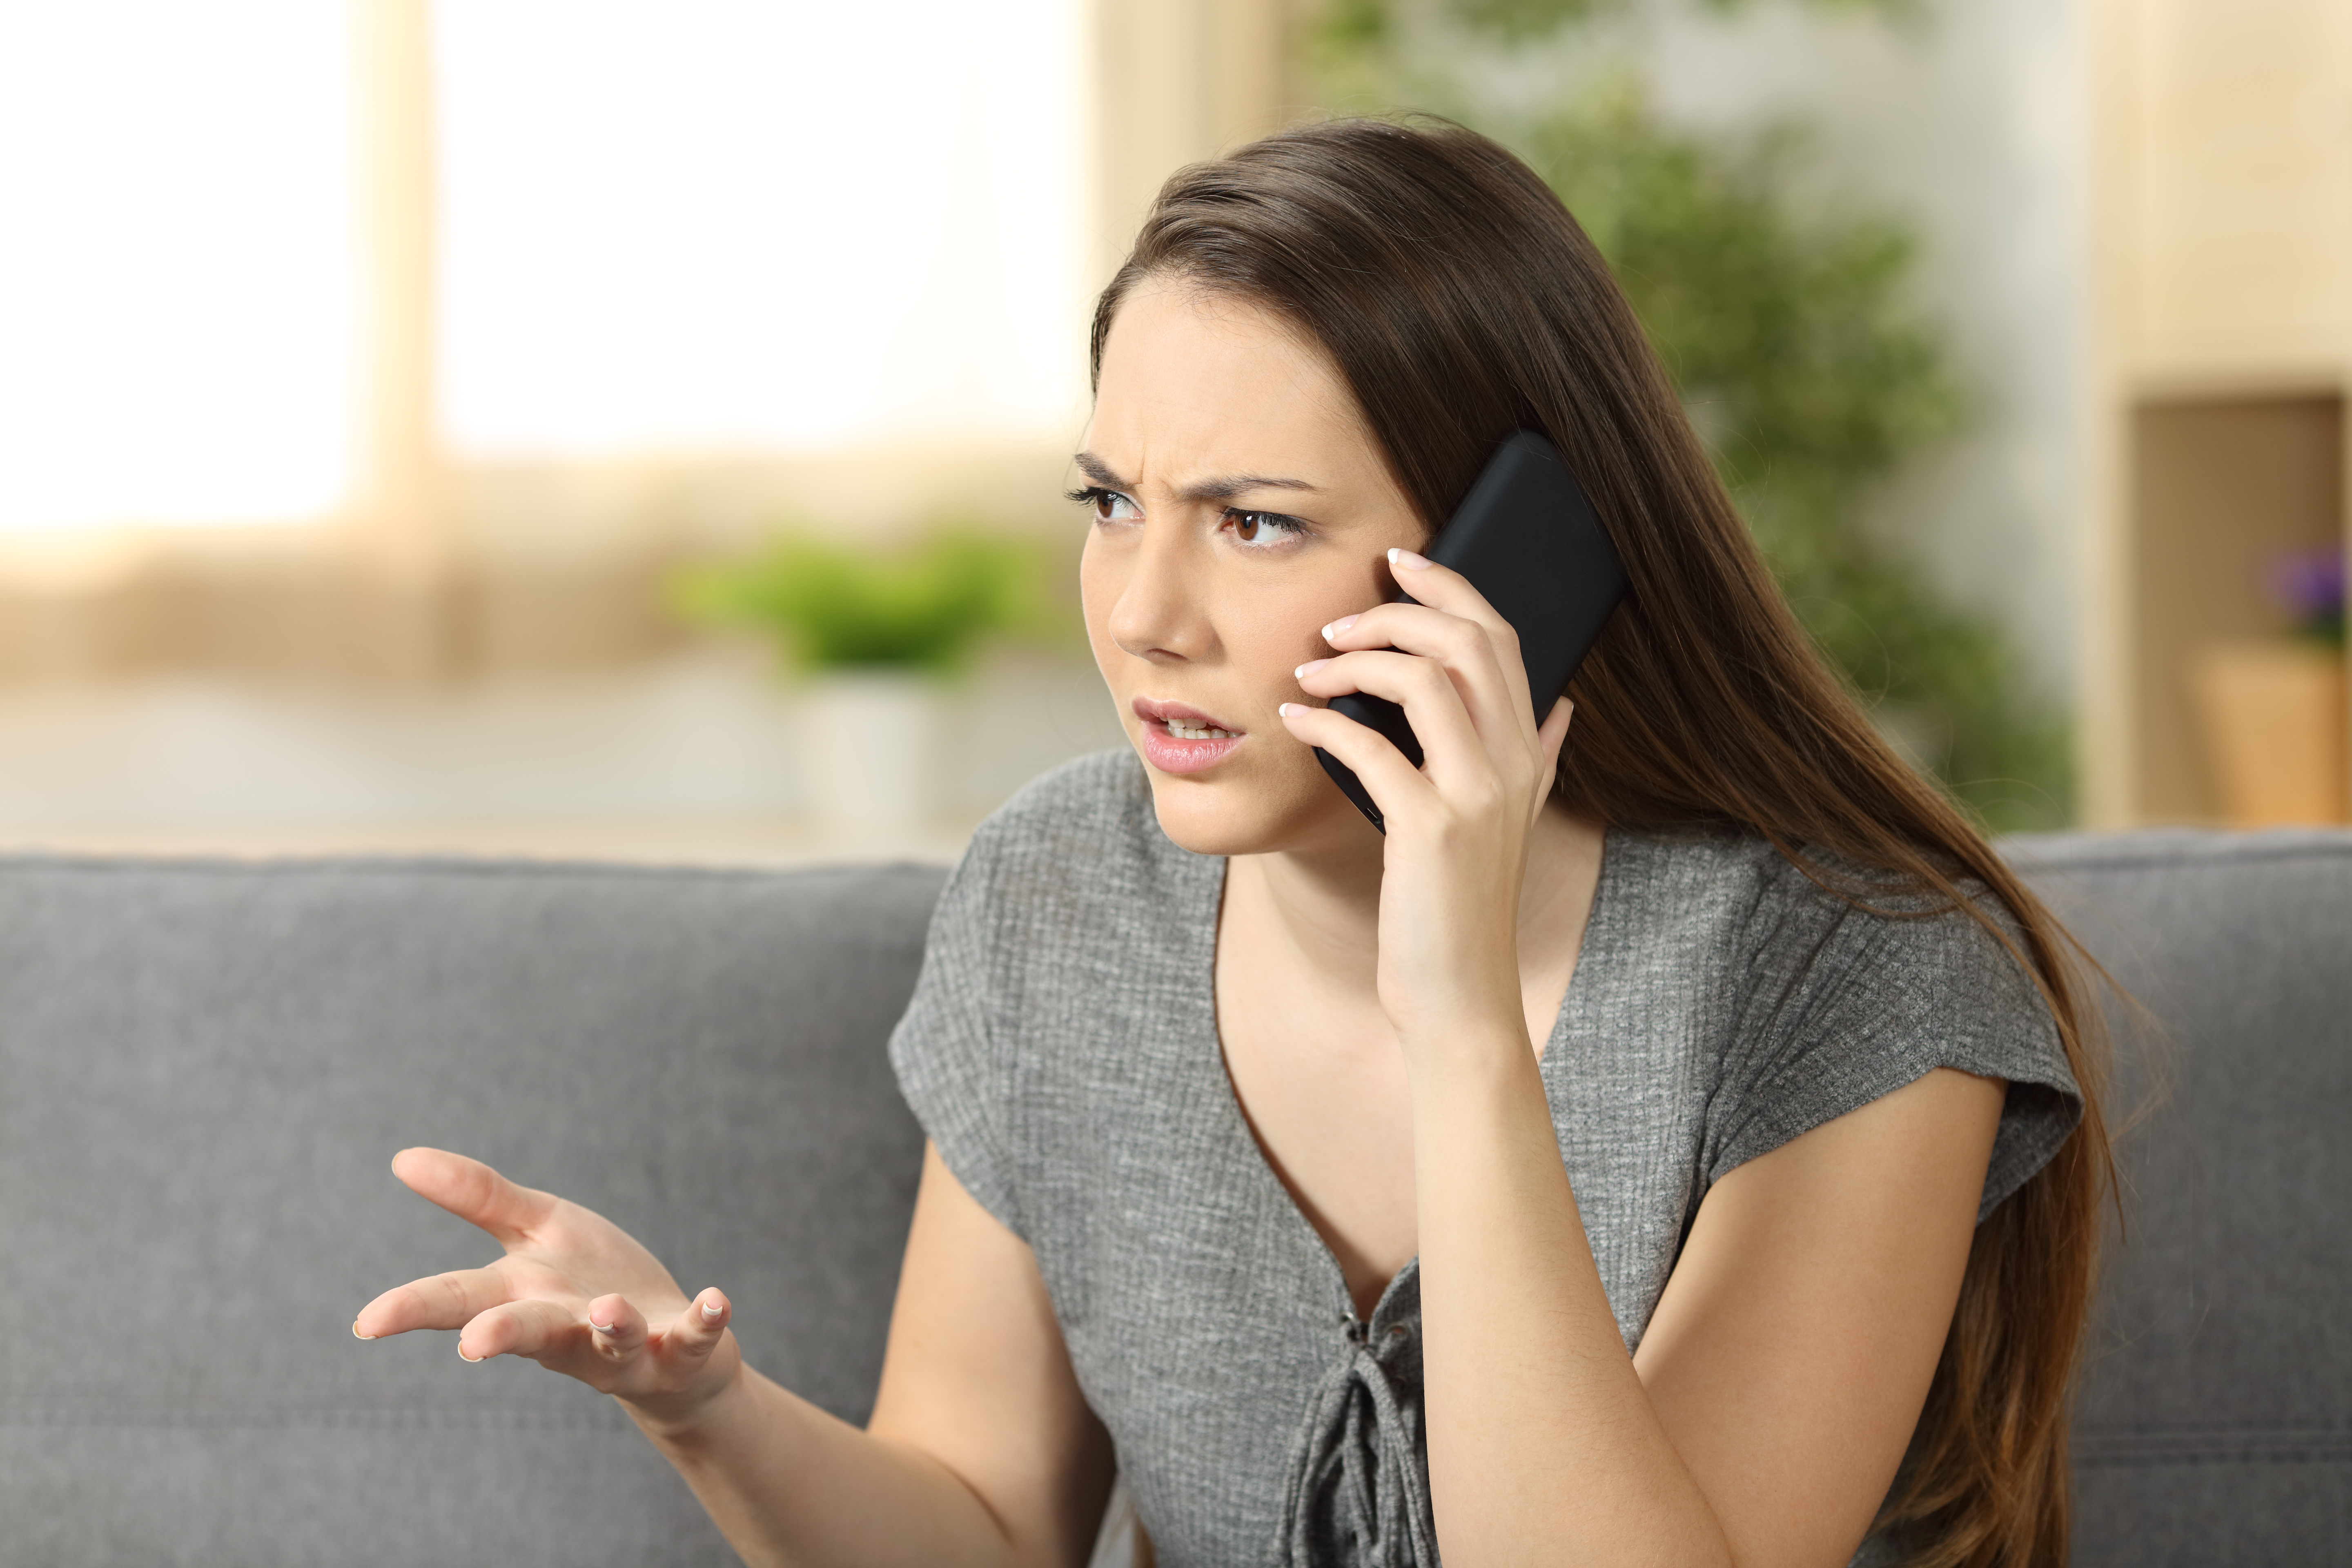 A woman attending a phone call | Source: Shutterstock